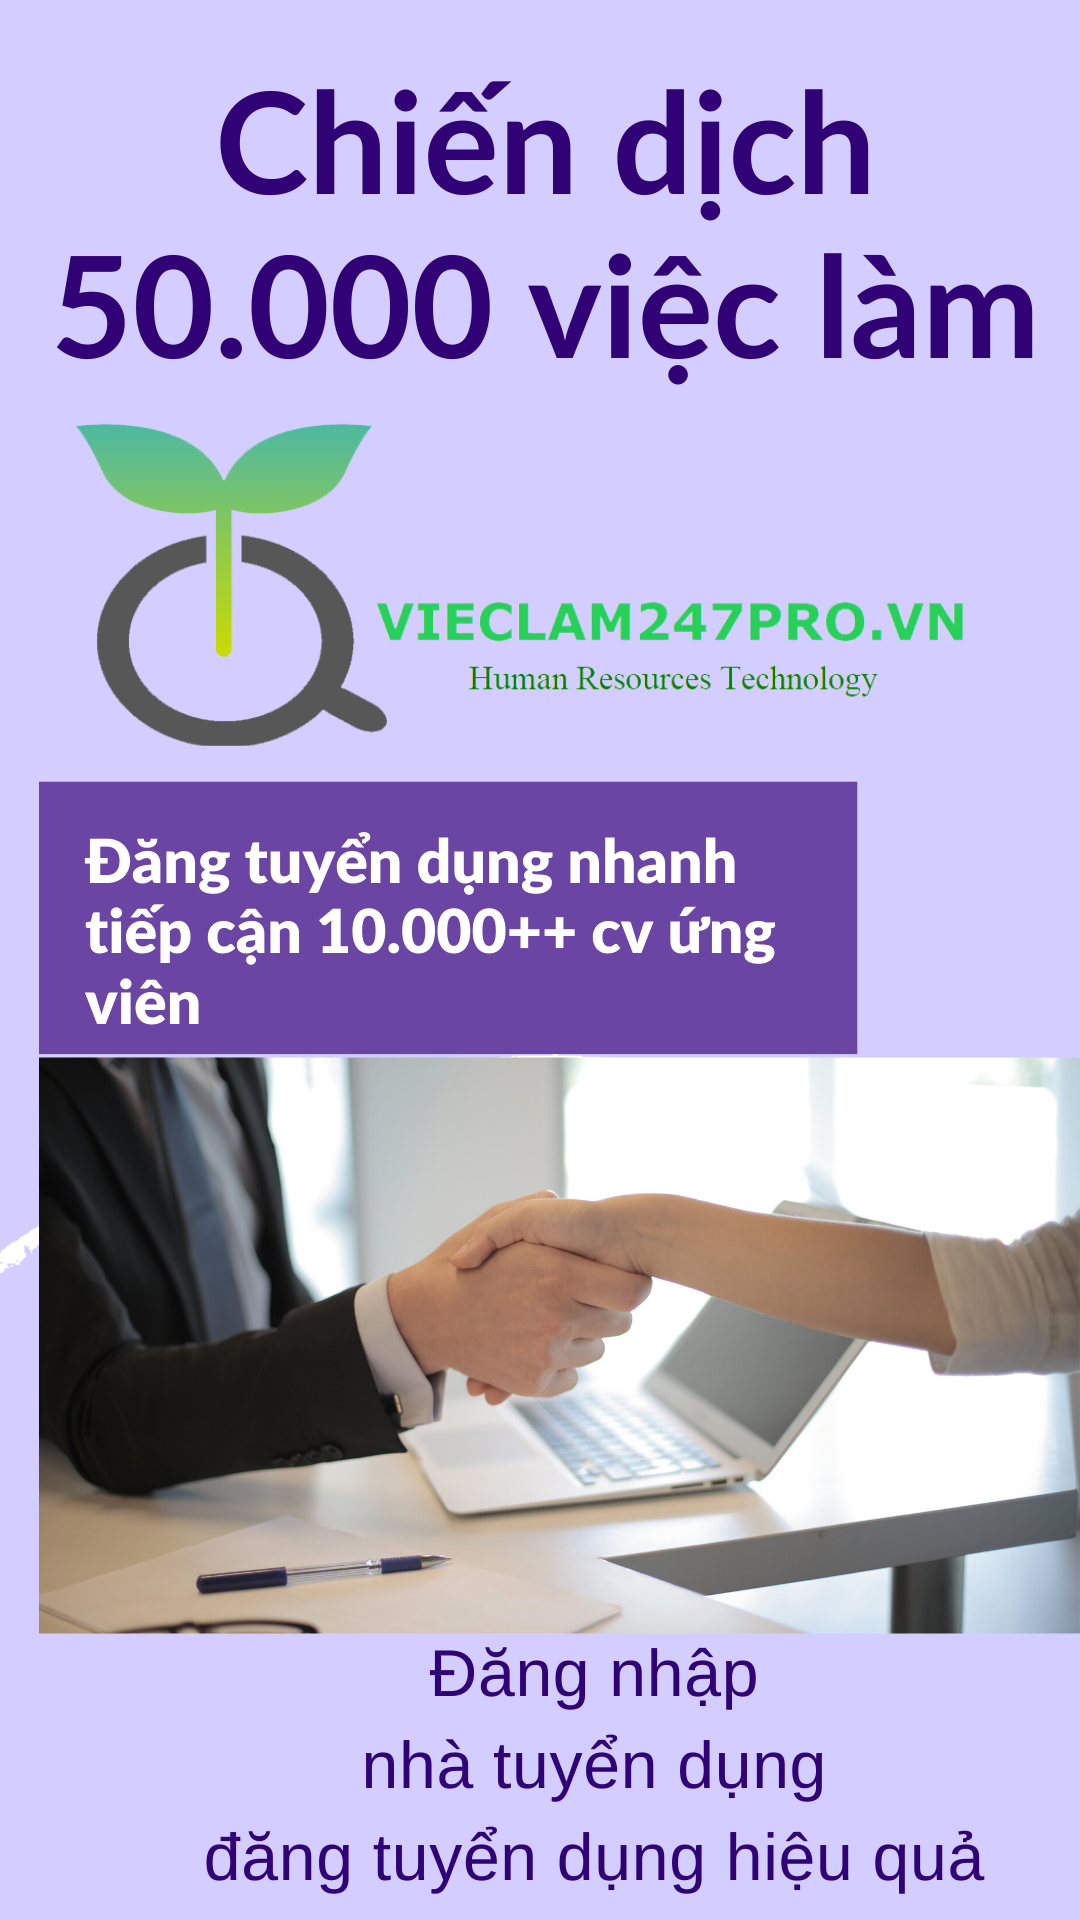 vieclam247pro.vn